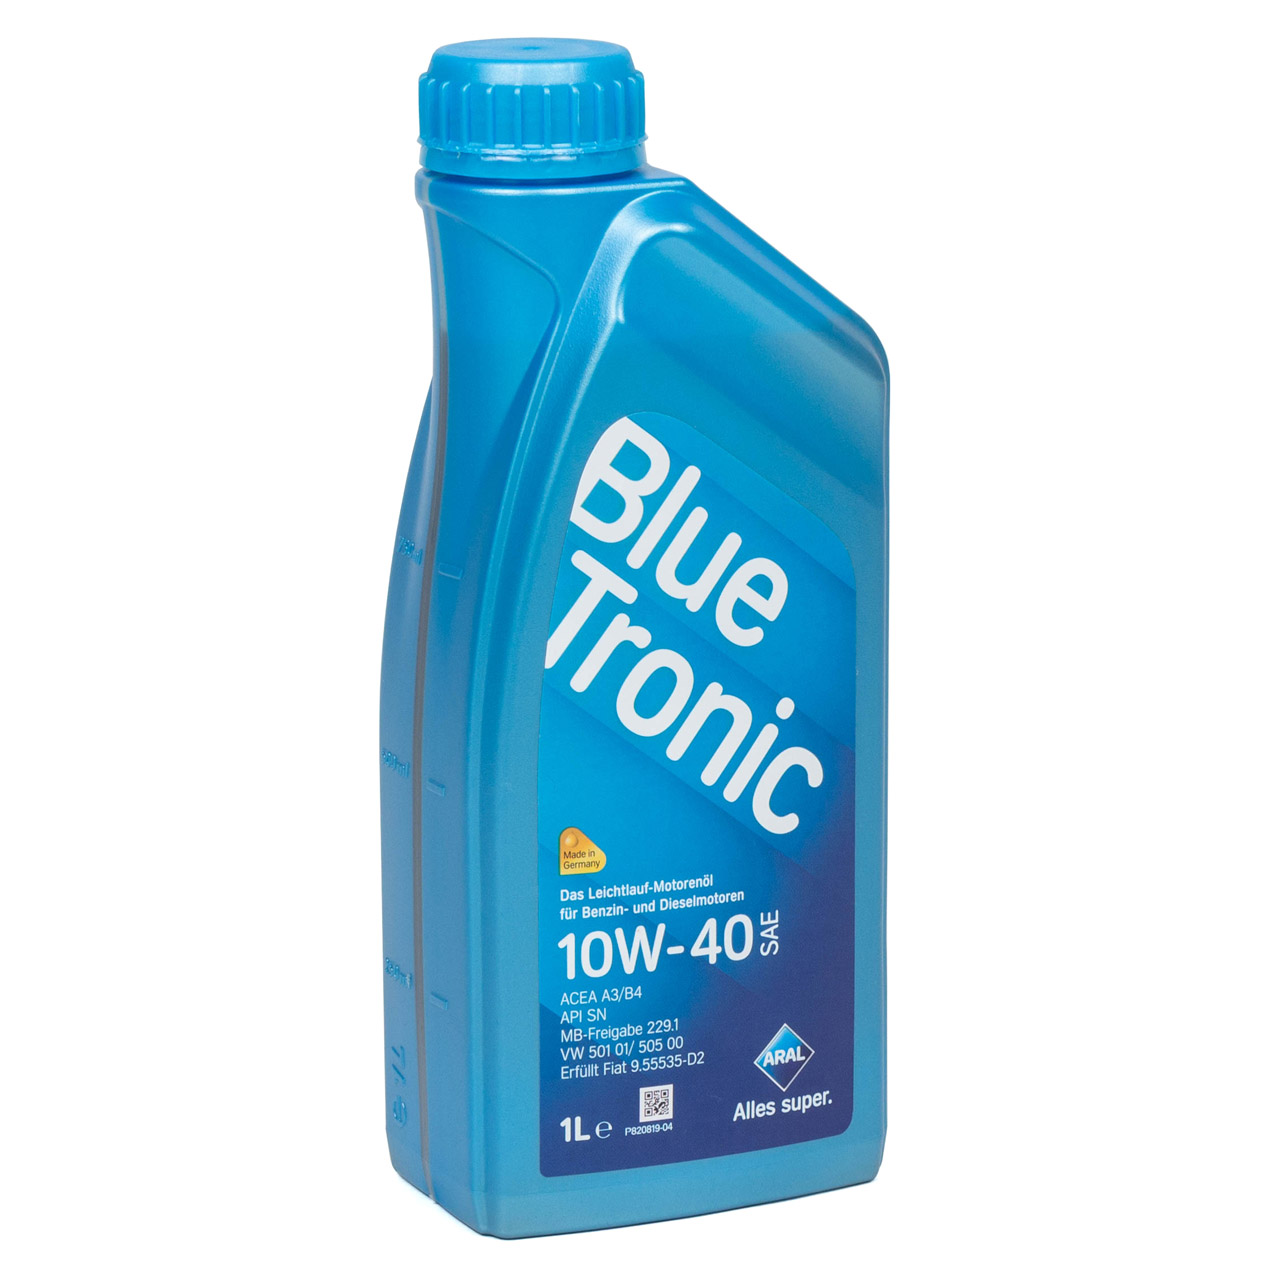 1L 1 Liter ARAL Motoröl Öl BLUE TRONIC 10W40 MB 229.1 VW 501.01/505.00 FIAT 9.55535-D2